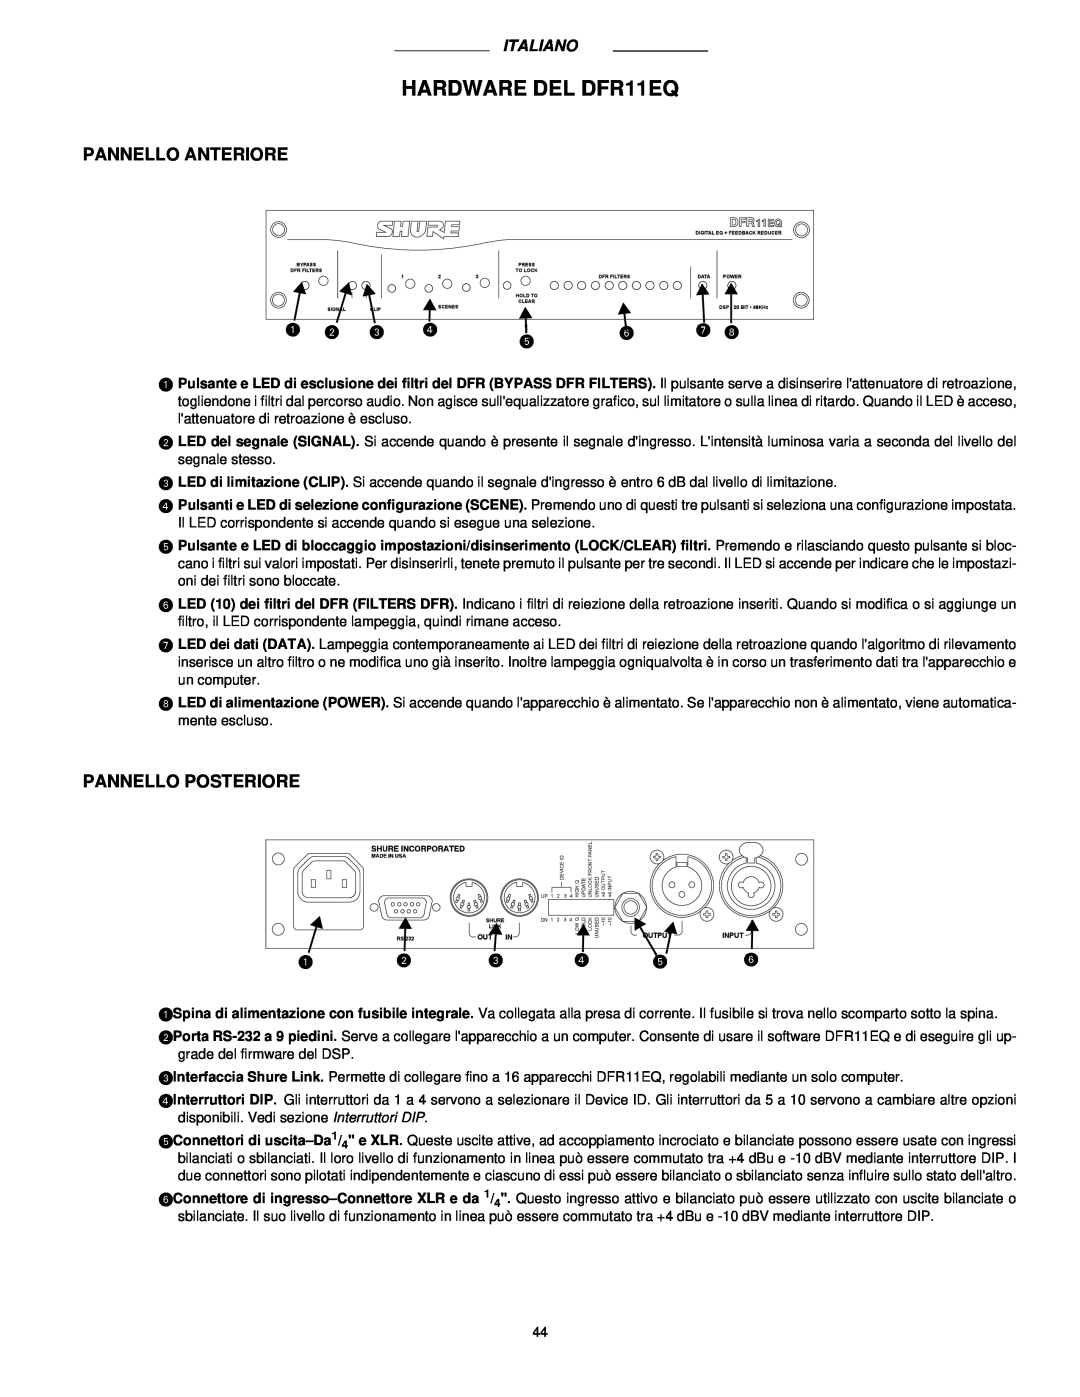 Shure DFR11EQ VERSION 5 manual HARDWARE DEL DFR11EQ, Pannello Anteriore, Pannello Posteriore 